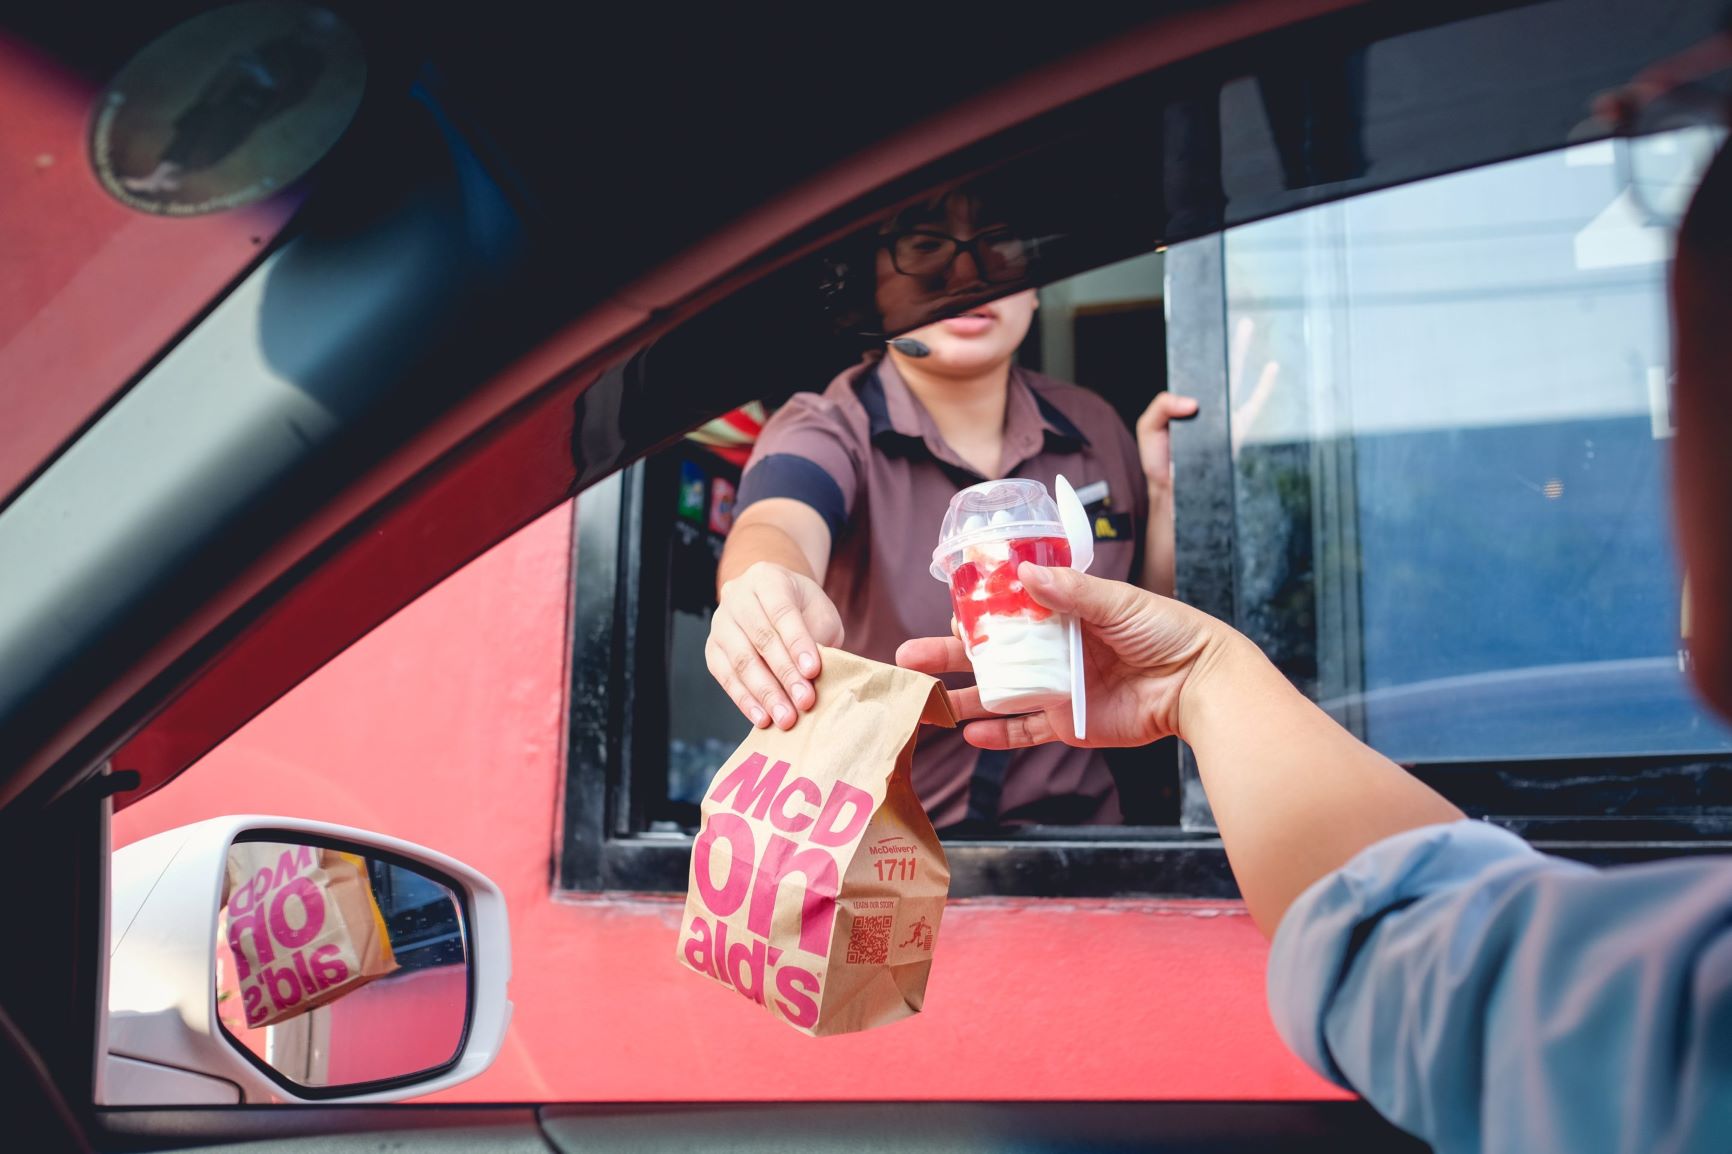 O que levou o McDonald’s a desistir de usar inteligência artificial em seu drive-thru